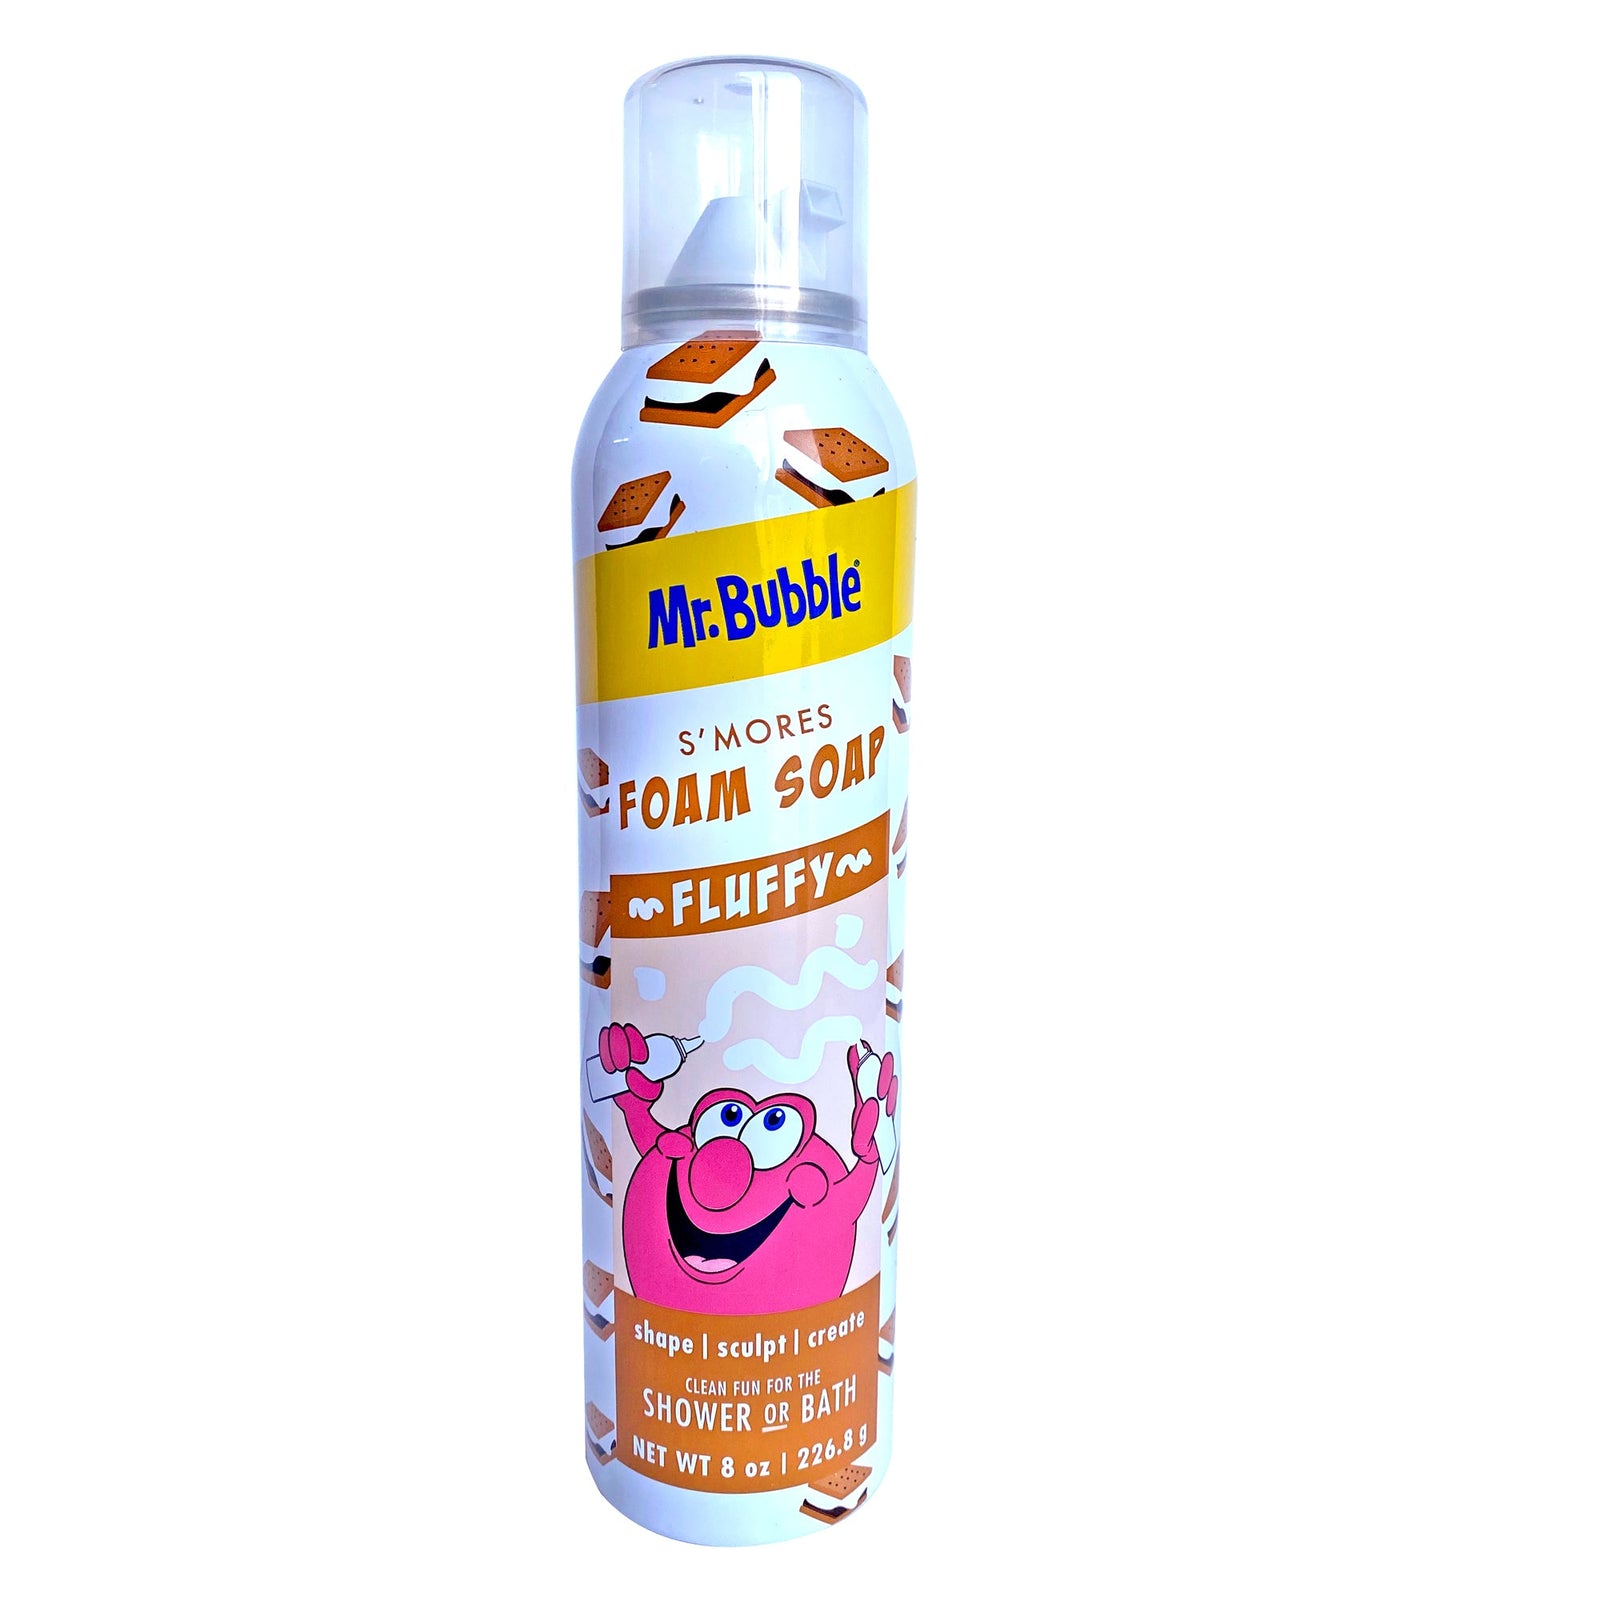 Mr. Bubble Fluffy Foam Soap S'mores